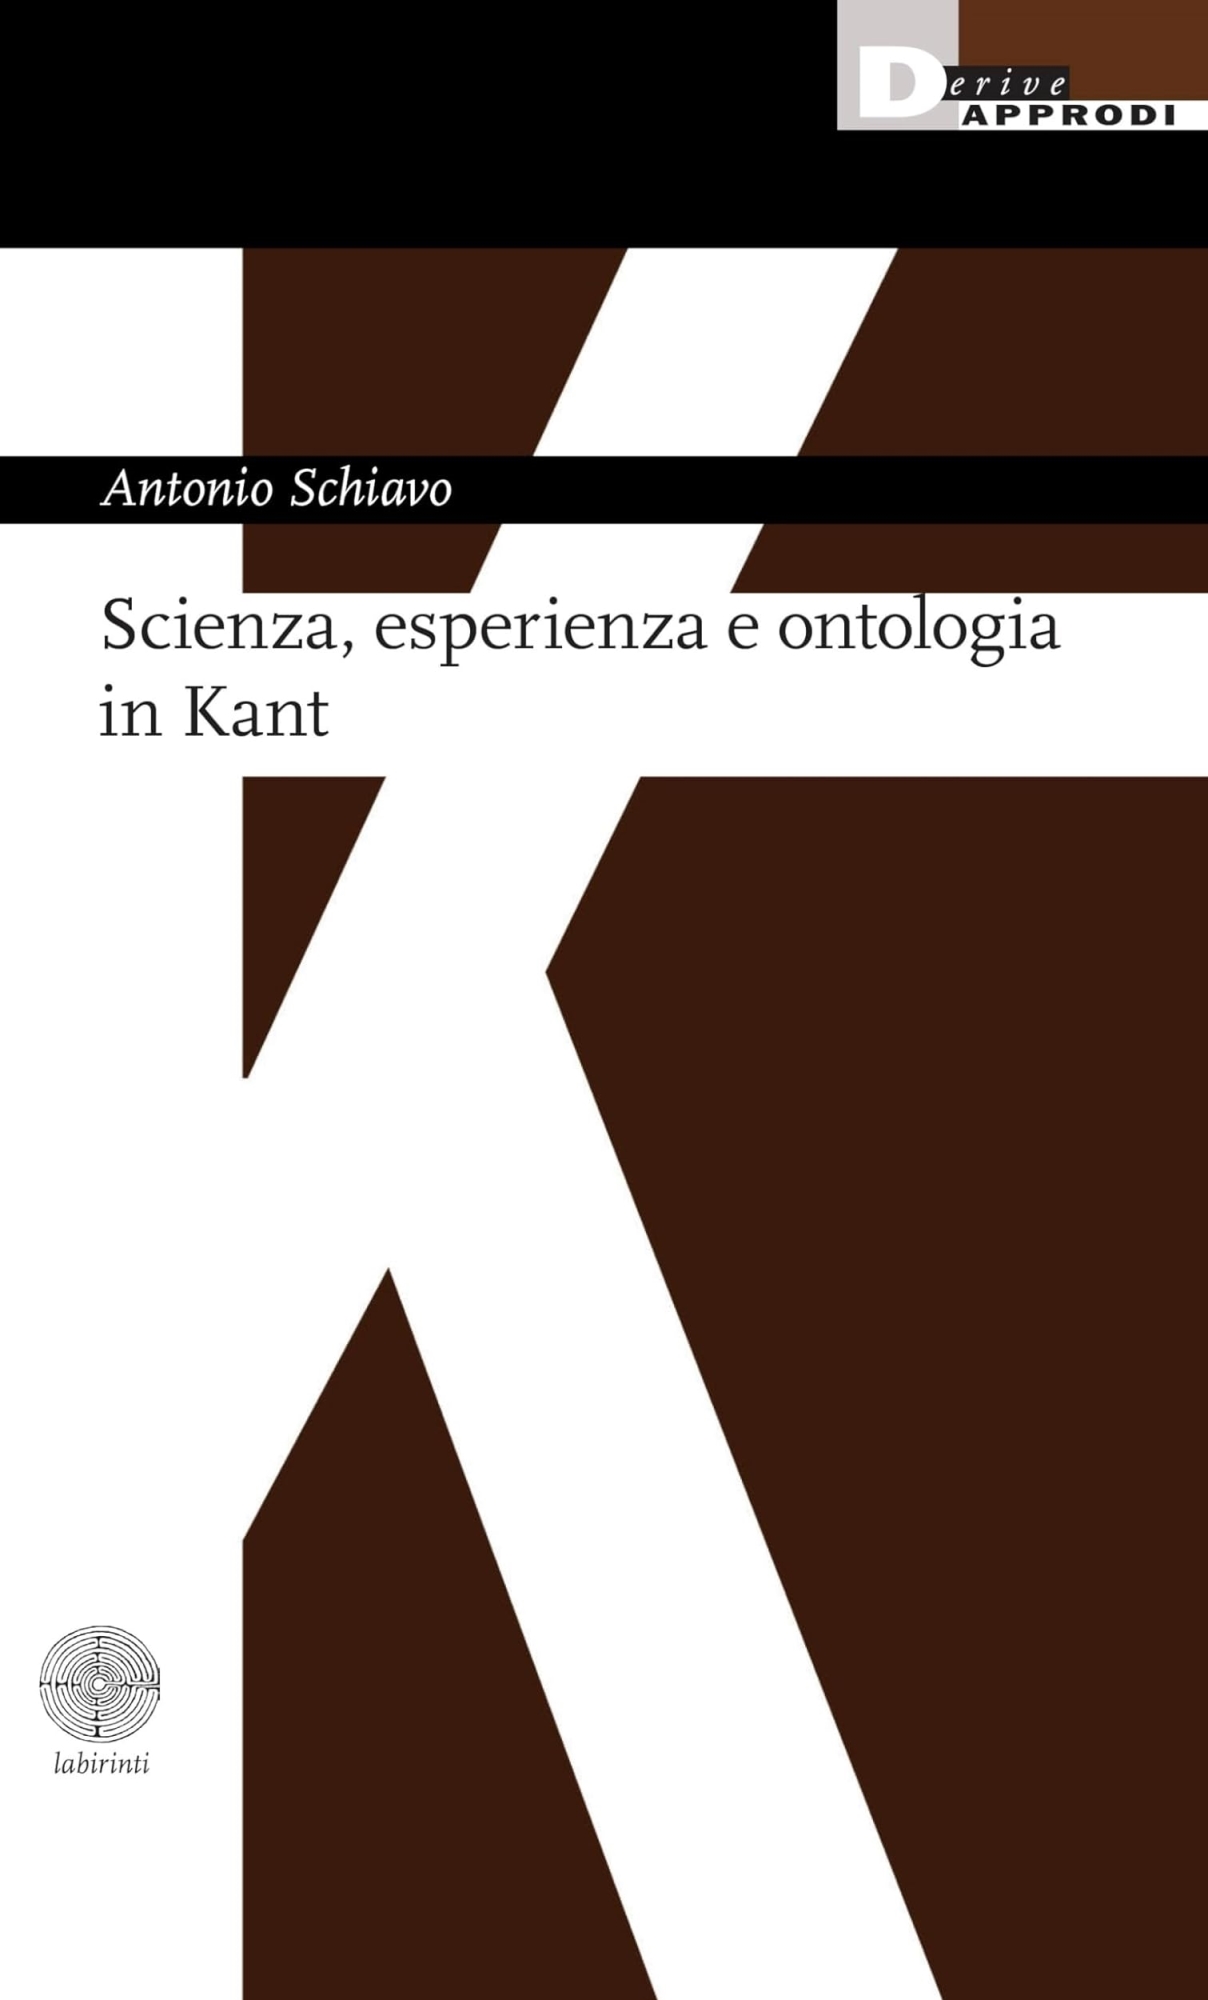 Libri Antonio Schiavo - Scienza Esperienza E Ontologia In Kant NUOVO SIGILLATO EDIZIONE DEL SUBITO DISPONIBILE